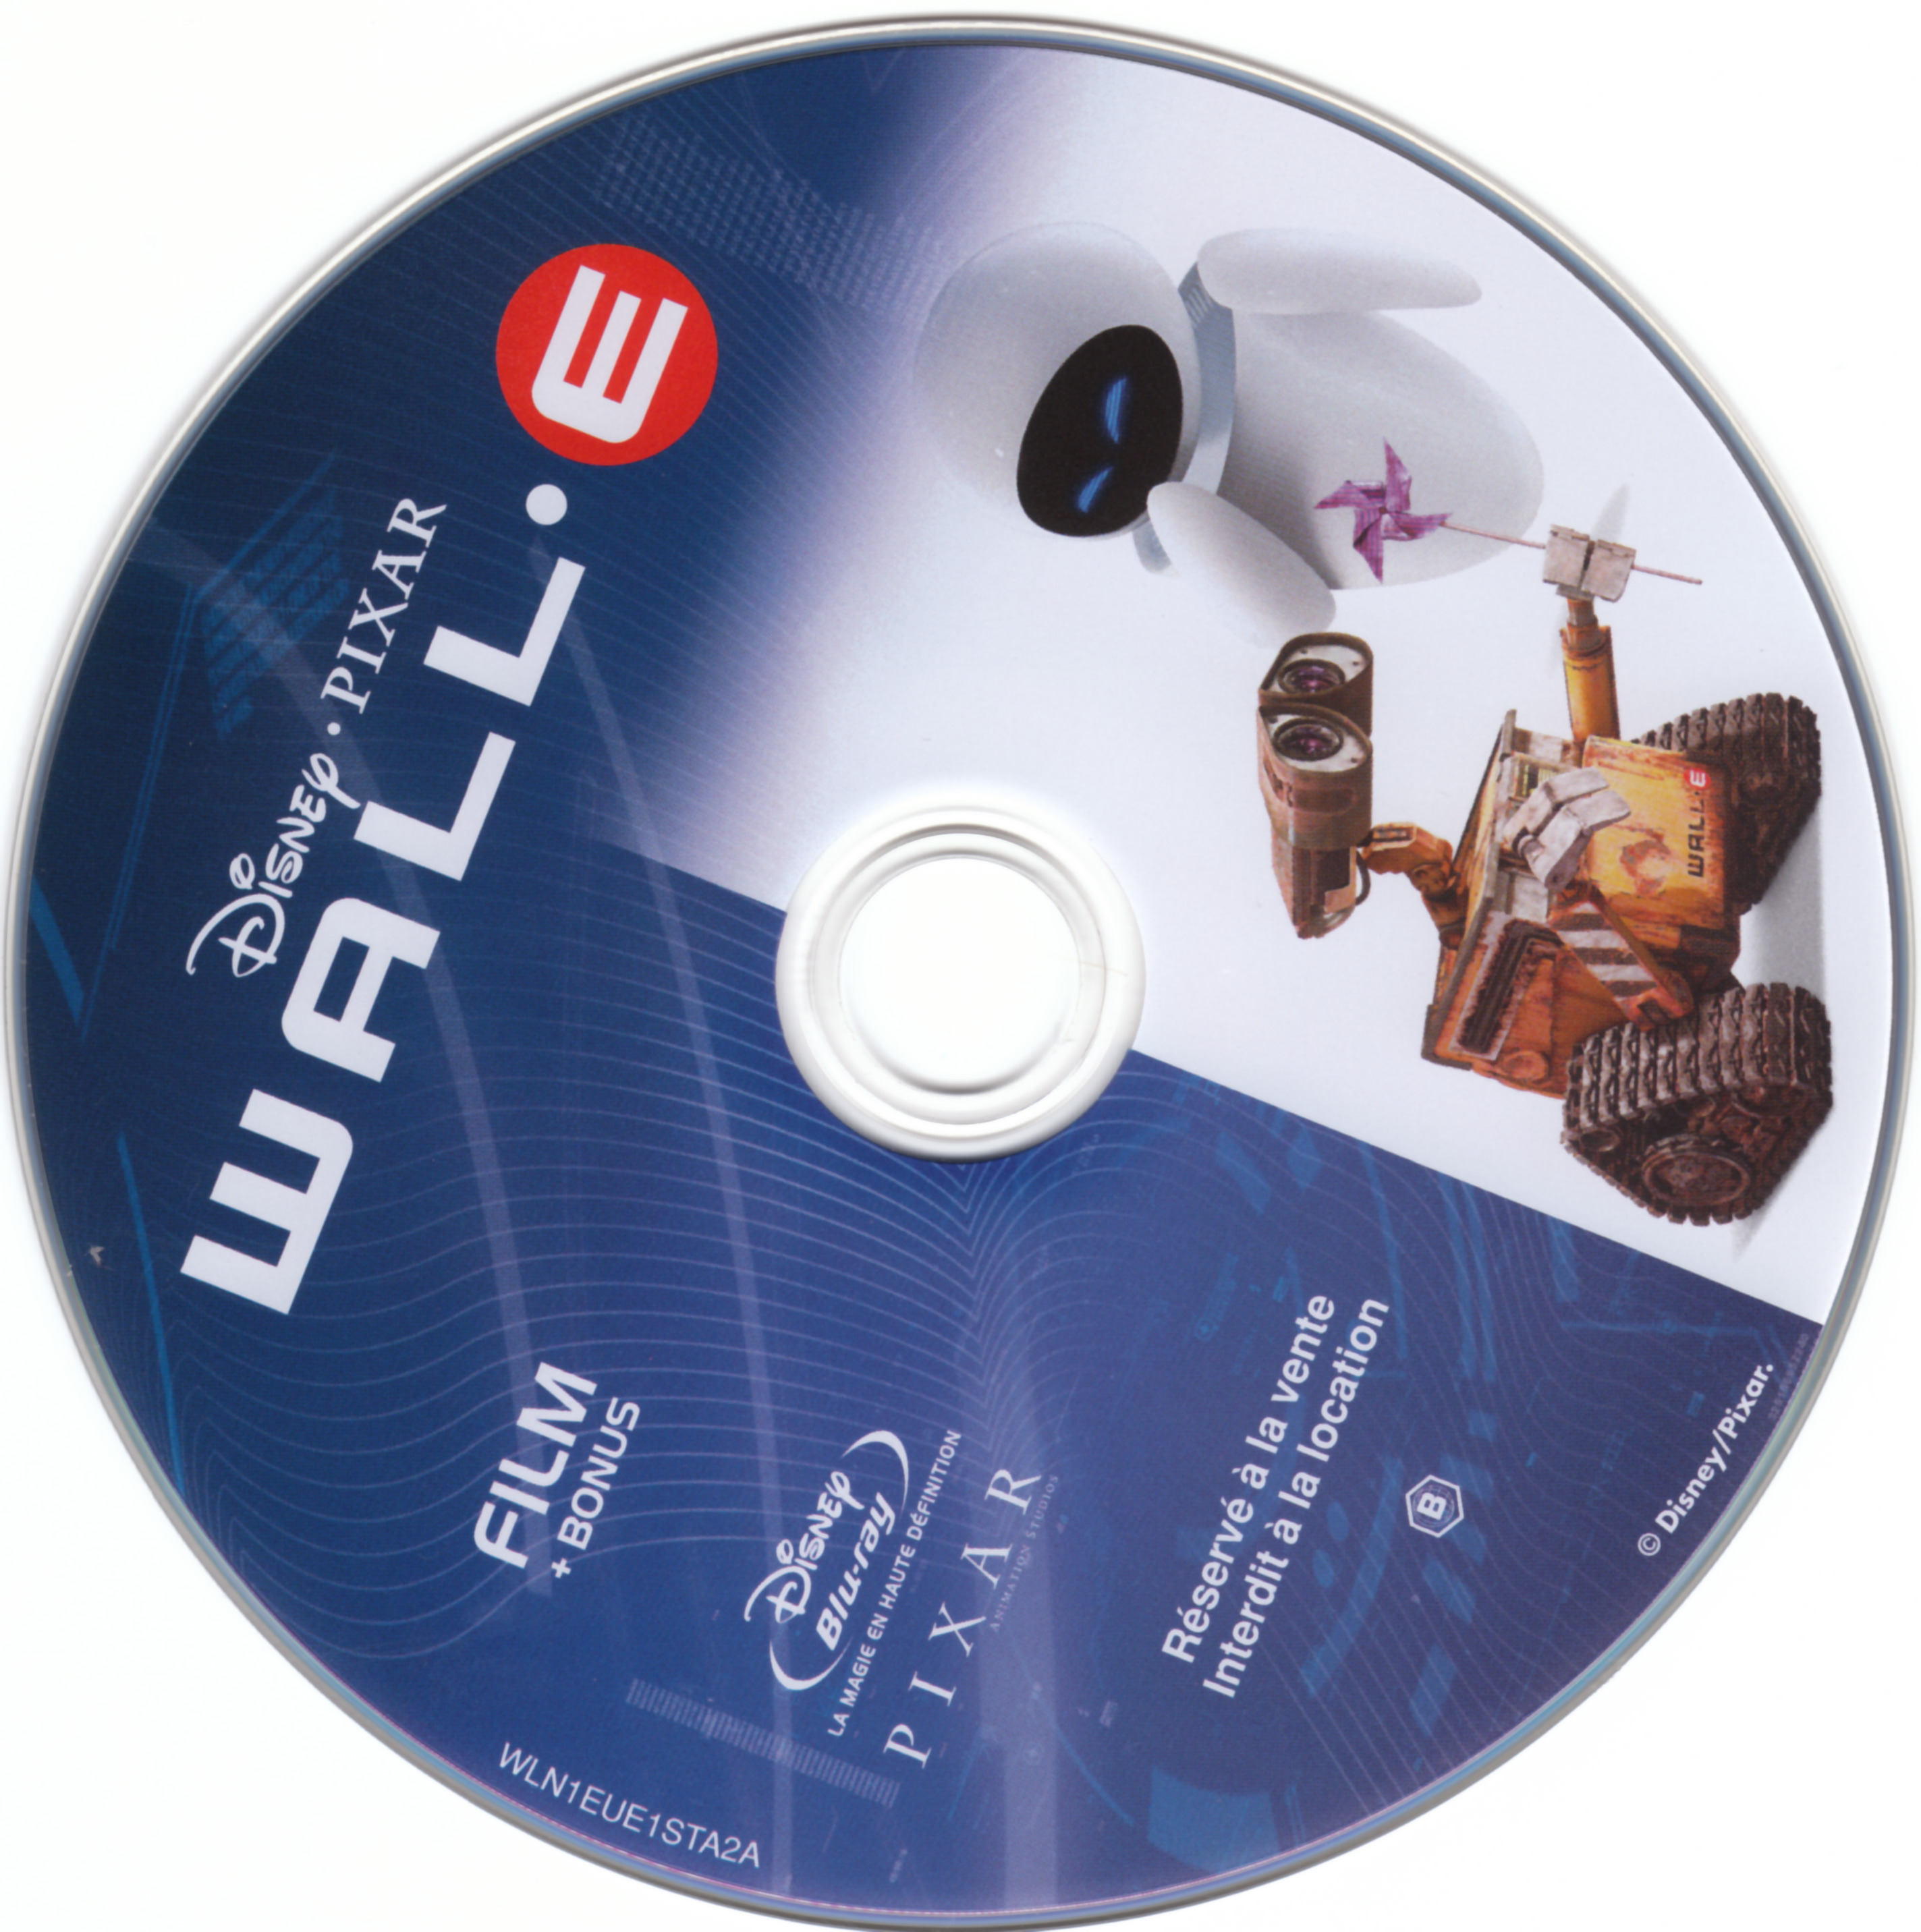 Wall-E (BLU-RAY) DISC 1